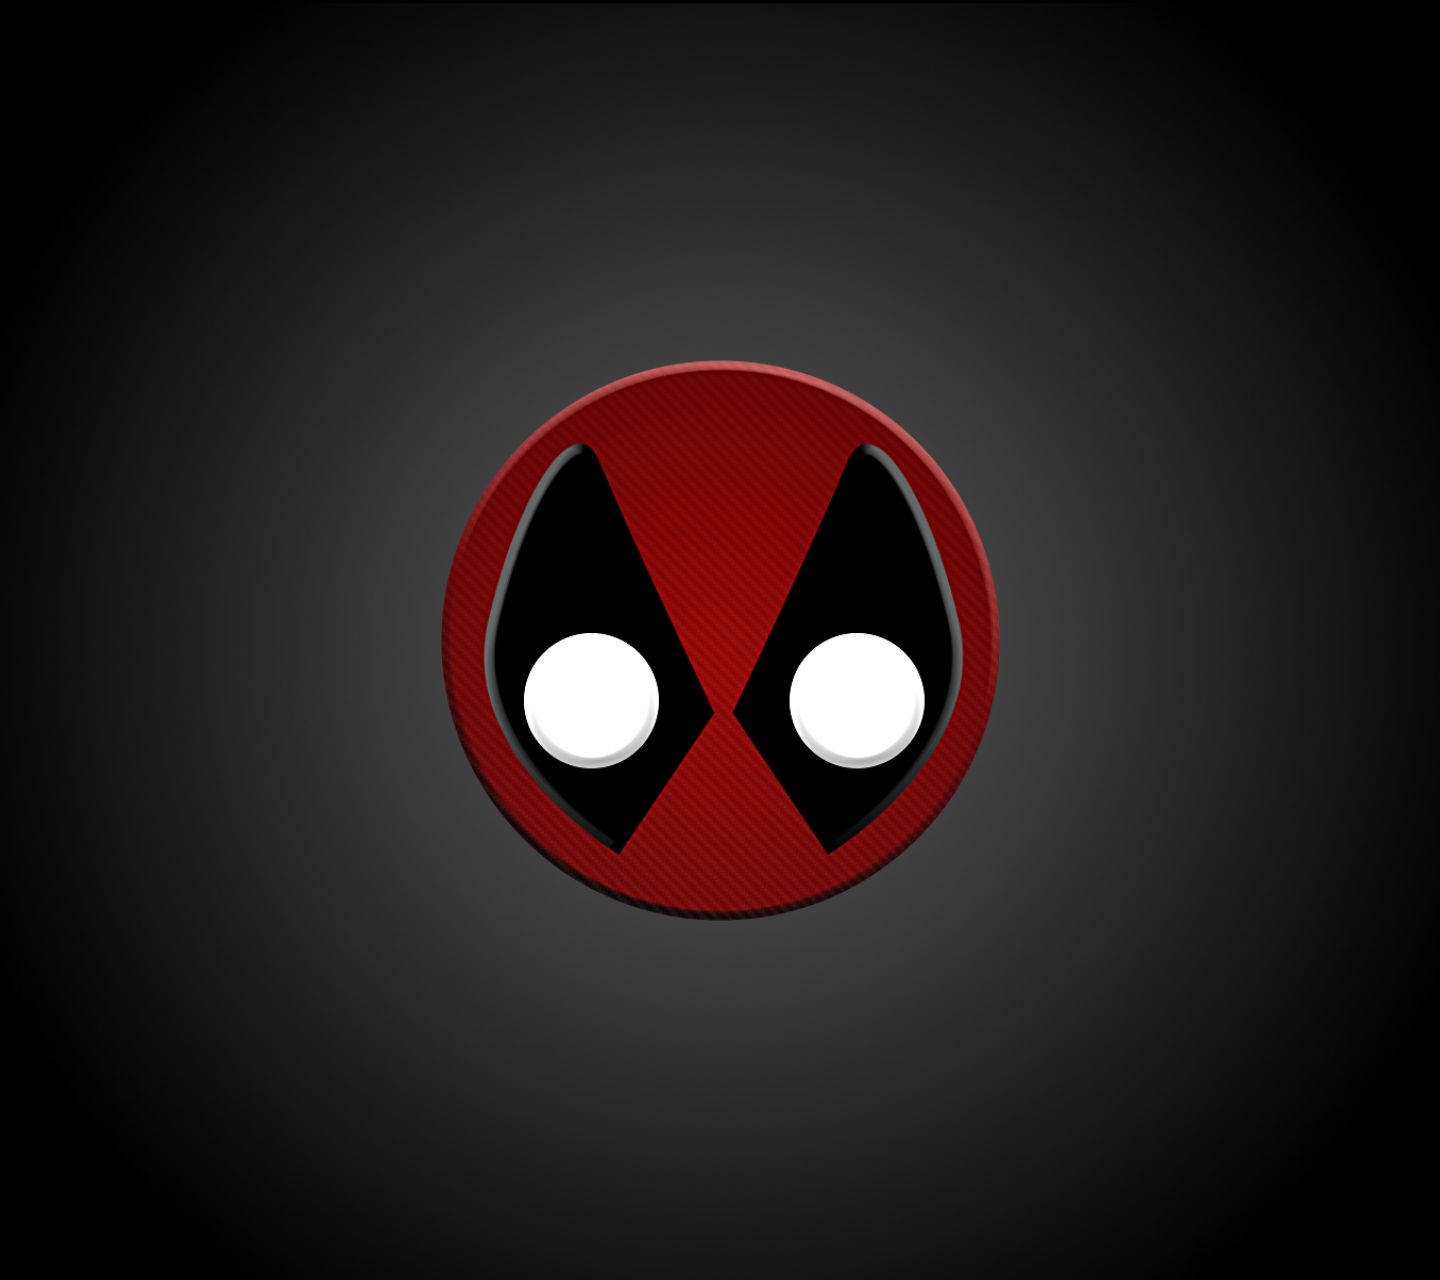 Descarga gratuita de fondo de pantalla para móvil de Deadpool, Historietas, Merc Con Boca, Merc Con Una Boca.